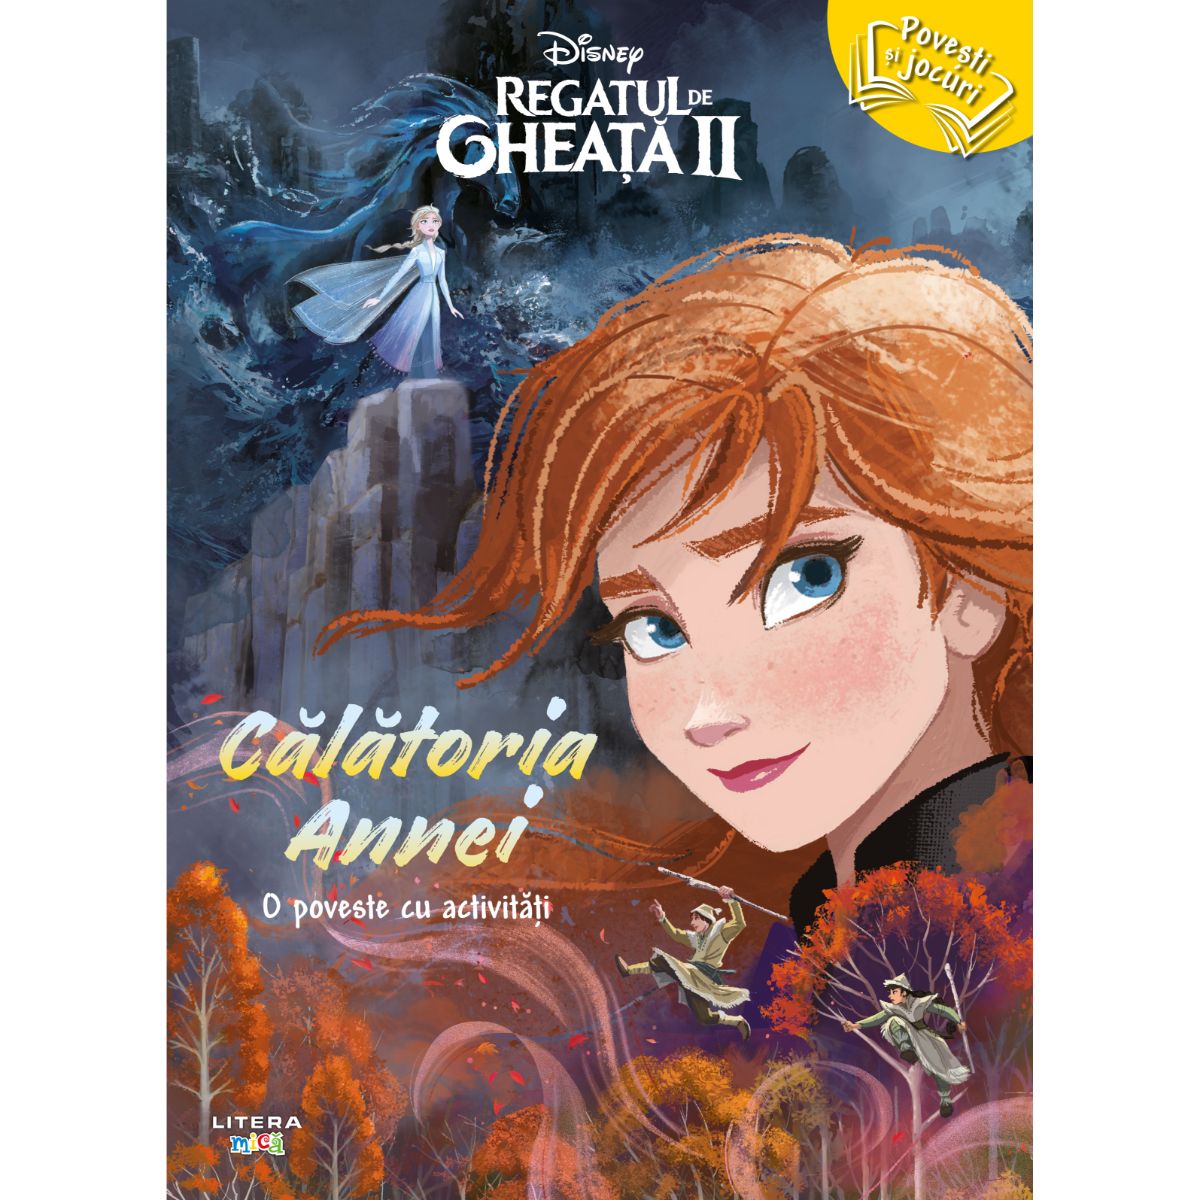 Disney, Regatul de Gheata II. Calatoria Annei, o poveste cu activitati Carti pentru copii imagine 2022